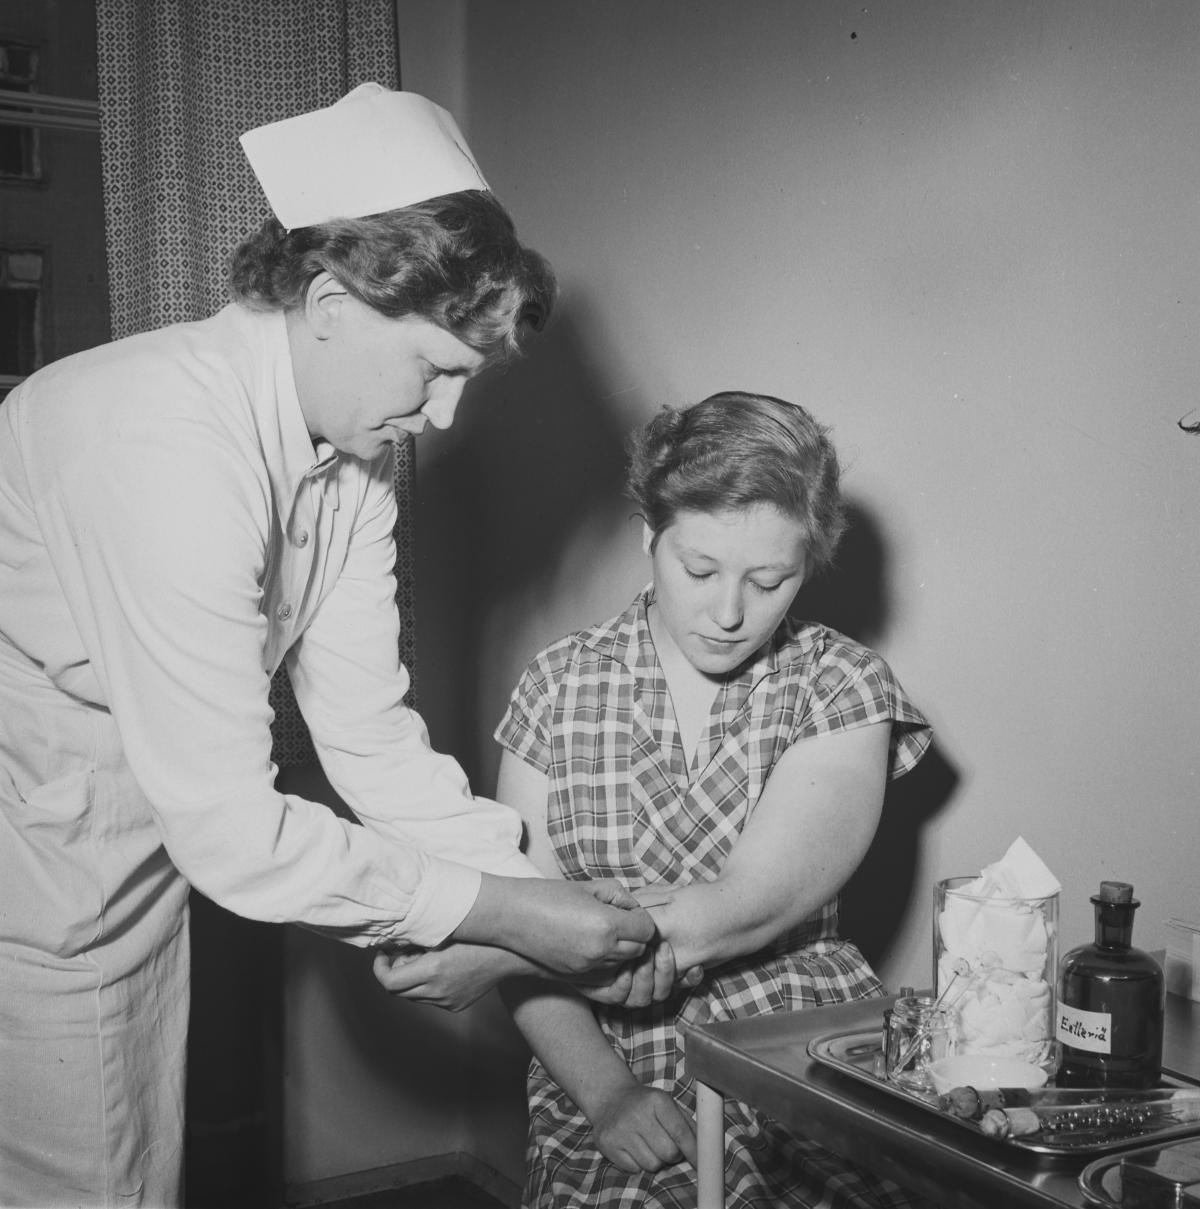 Hälsovårdare i vit hätta sticker vaccin i armen på en kvinna. På bordet bredvid kvinnan syns vaccineringstillbehör. 